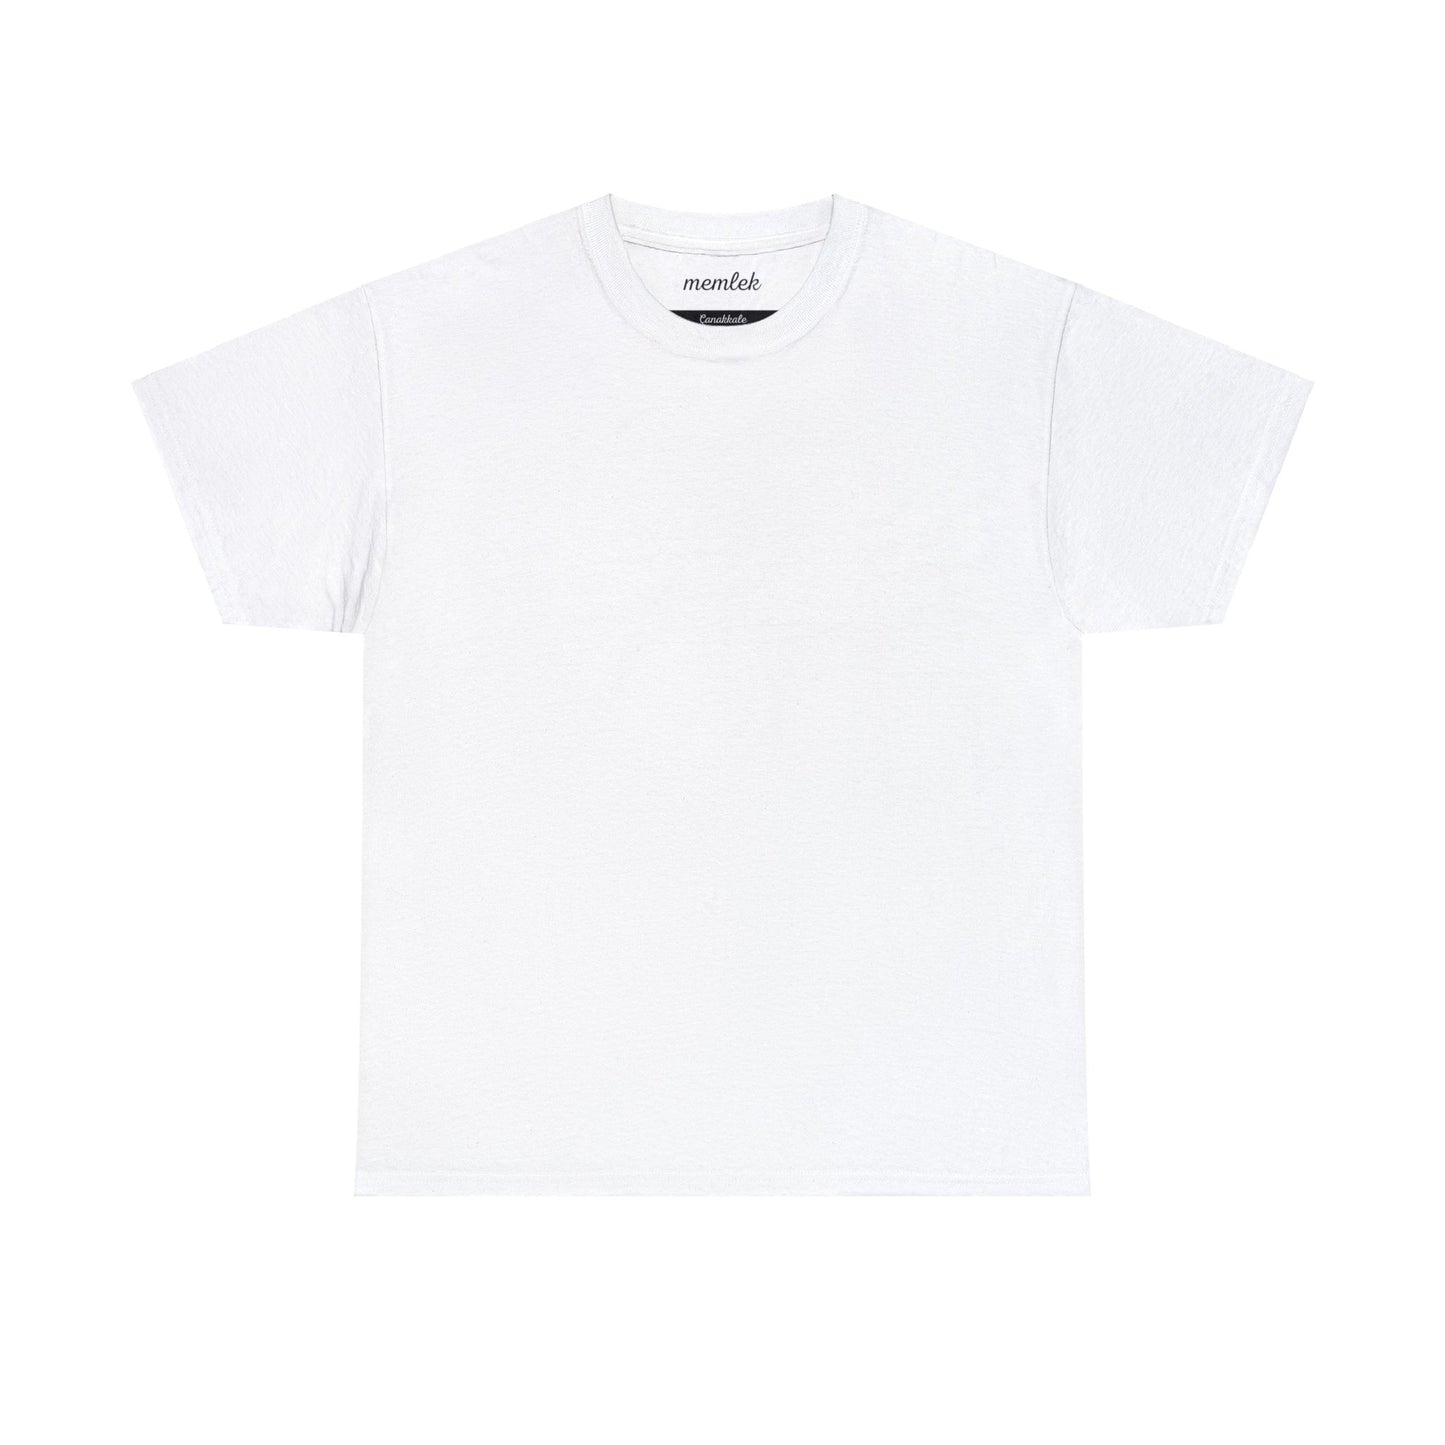 Kurt - 17 Çanakkale - T-Shirt - Back Print - Black/White